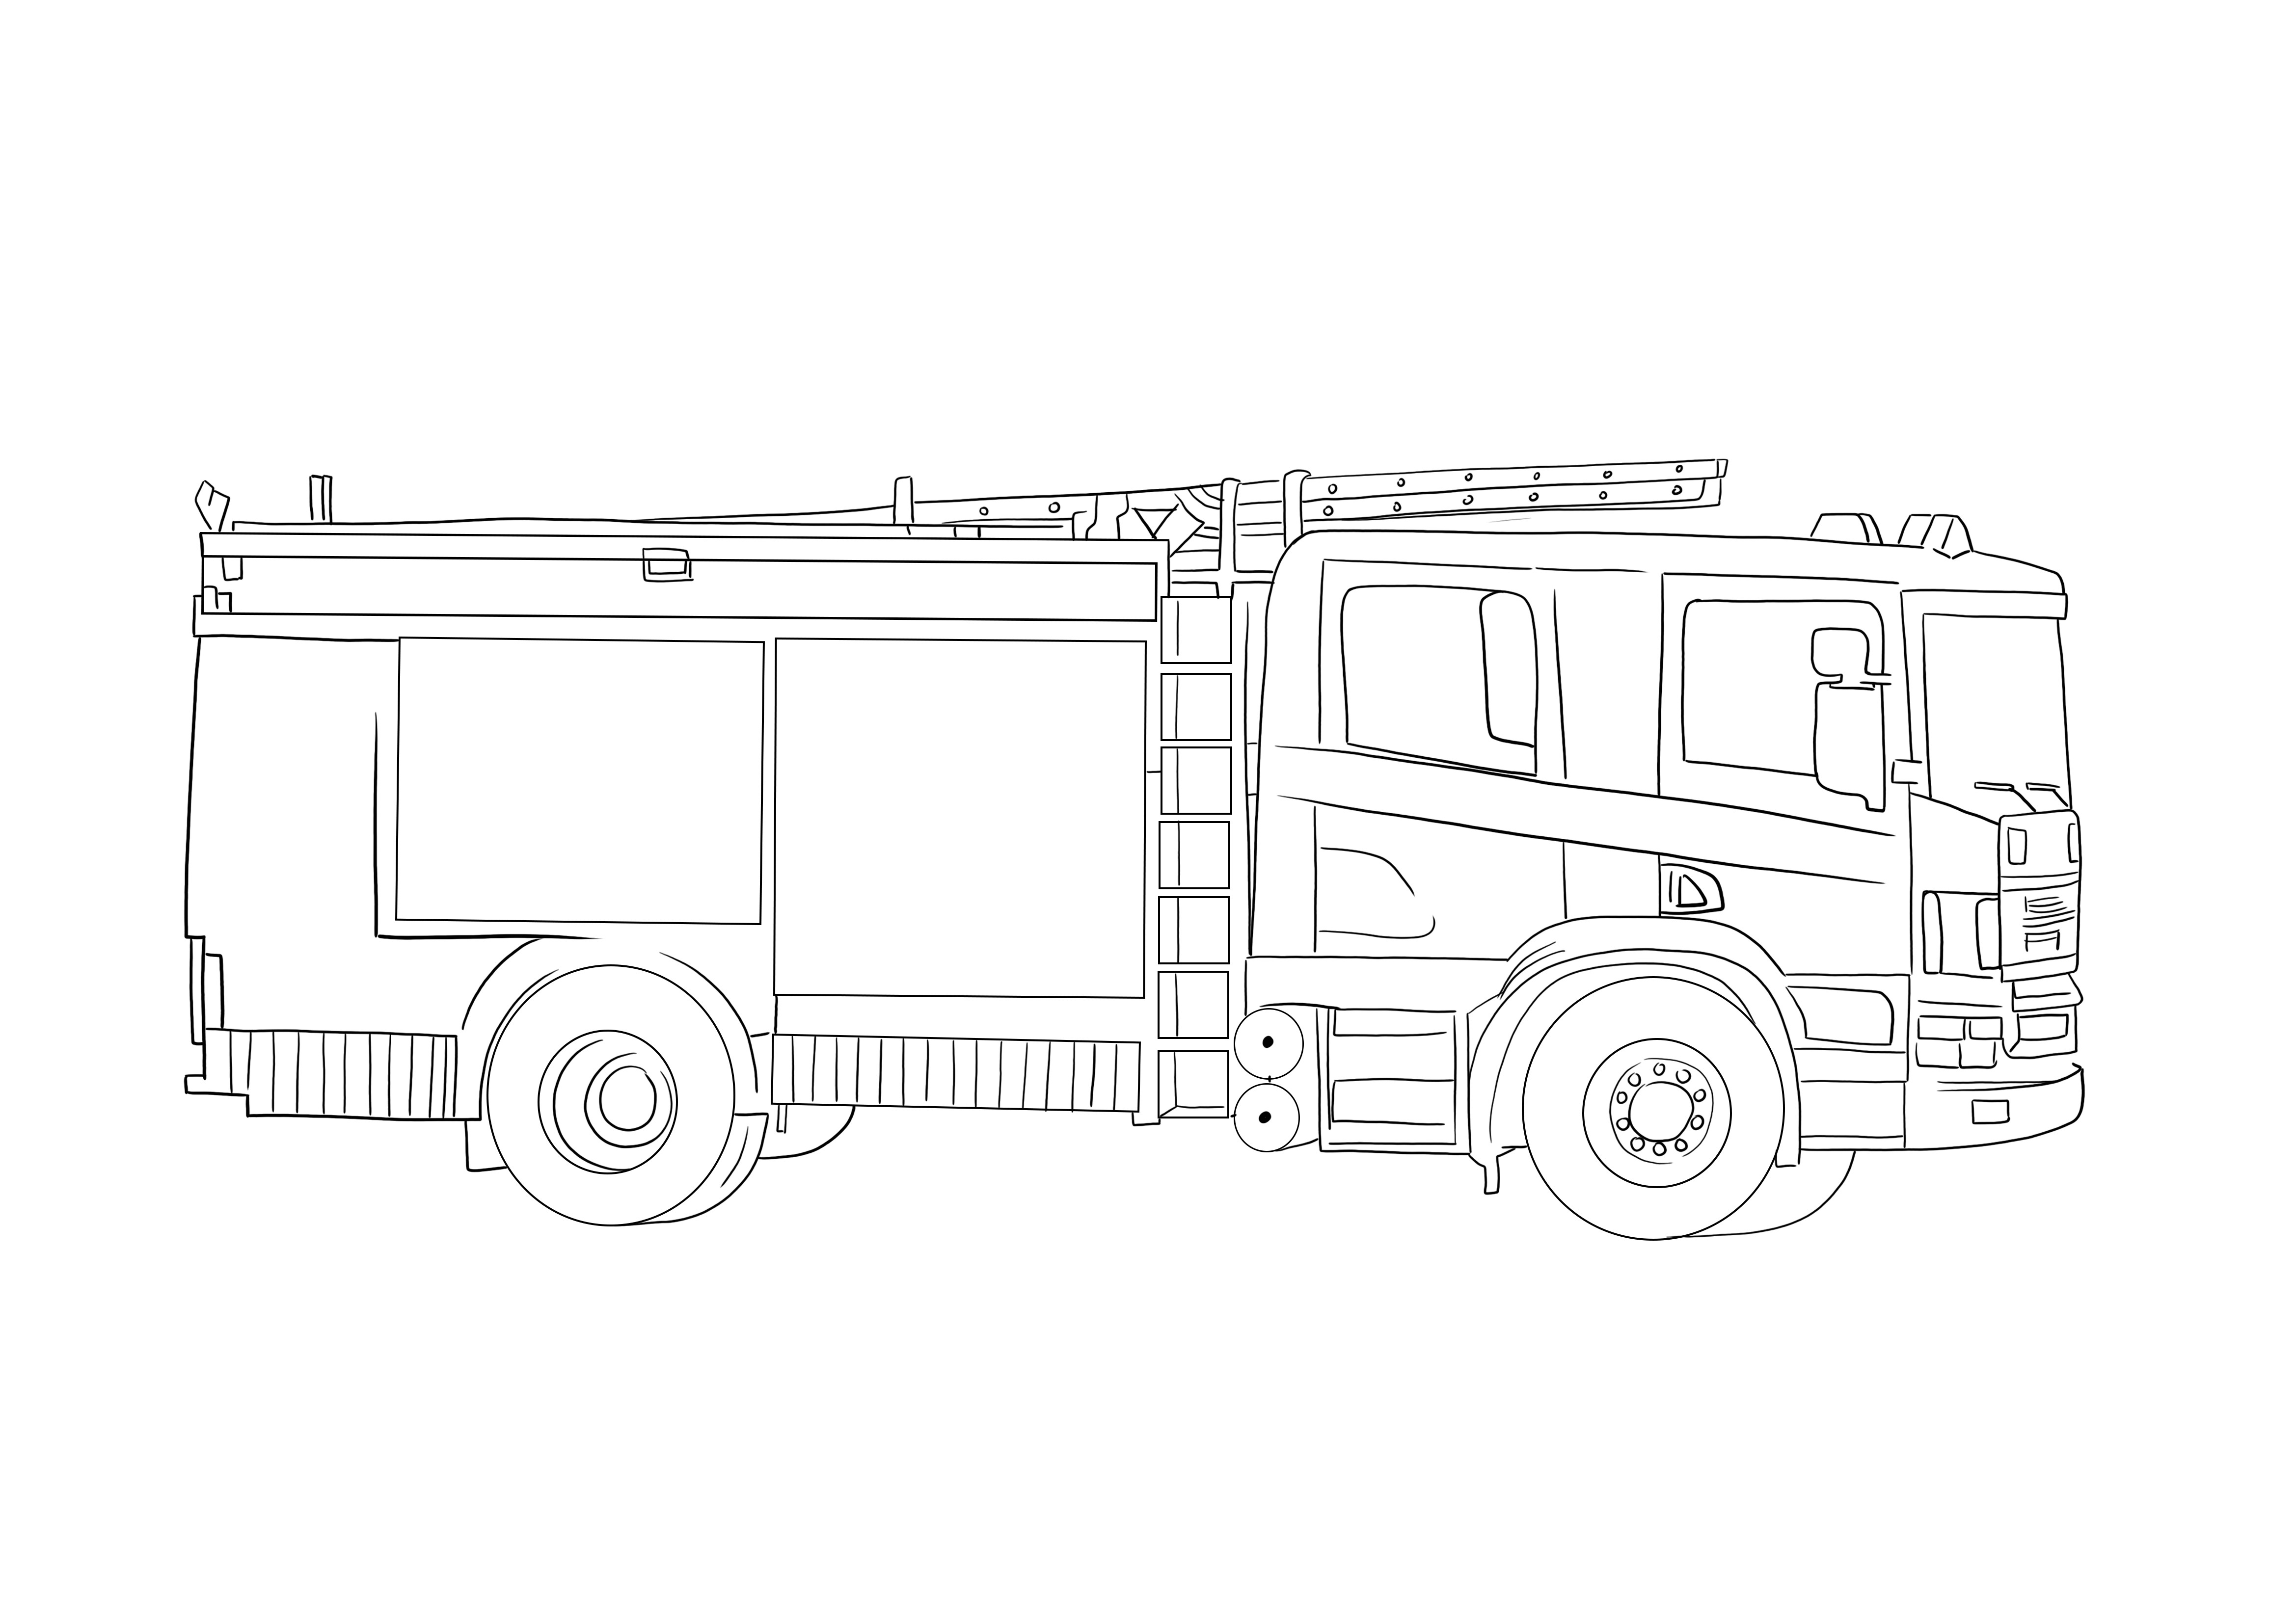 Fișa noastră de colorat Camion de pompieri este gata de plecare și de tipărită